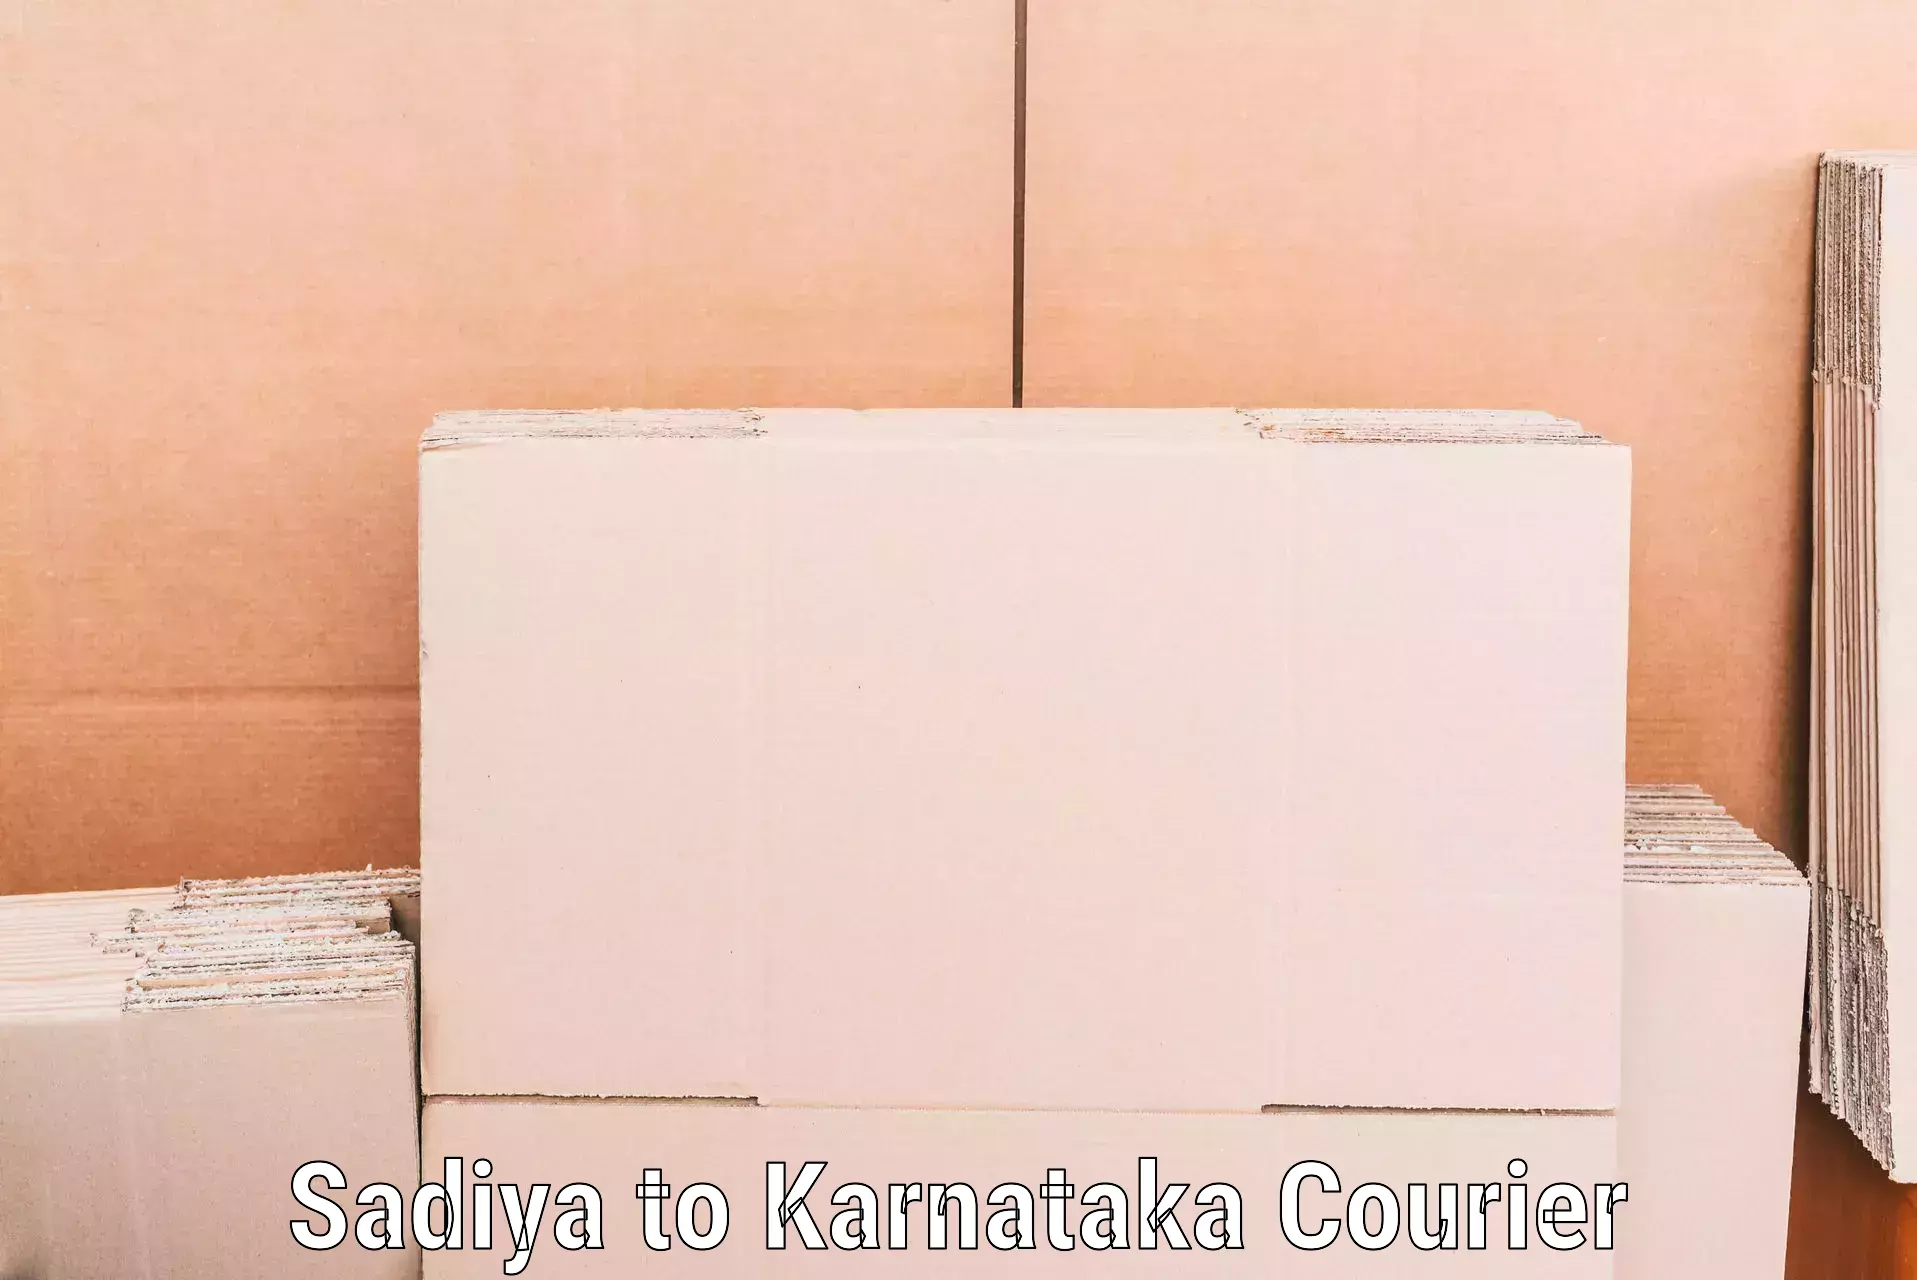 High-quality moving services Sadiya to Kanjarakatte